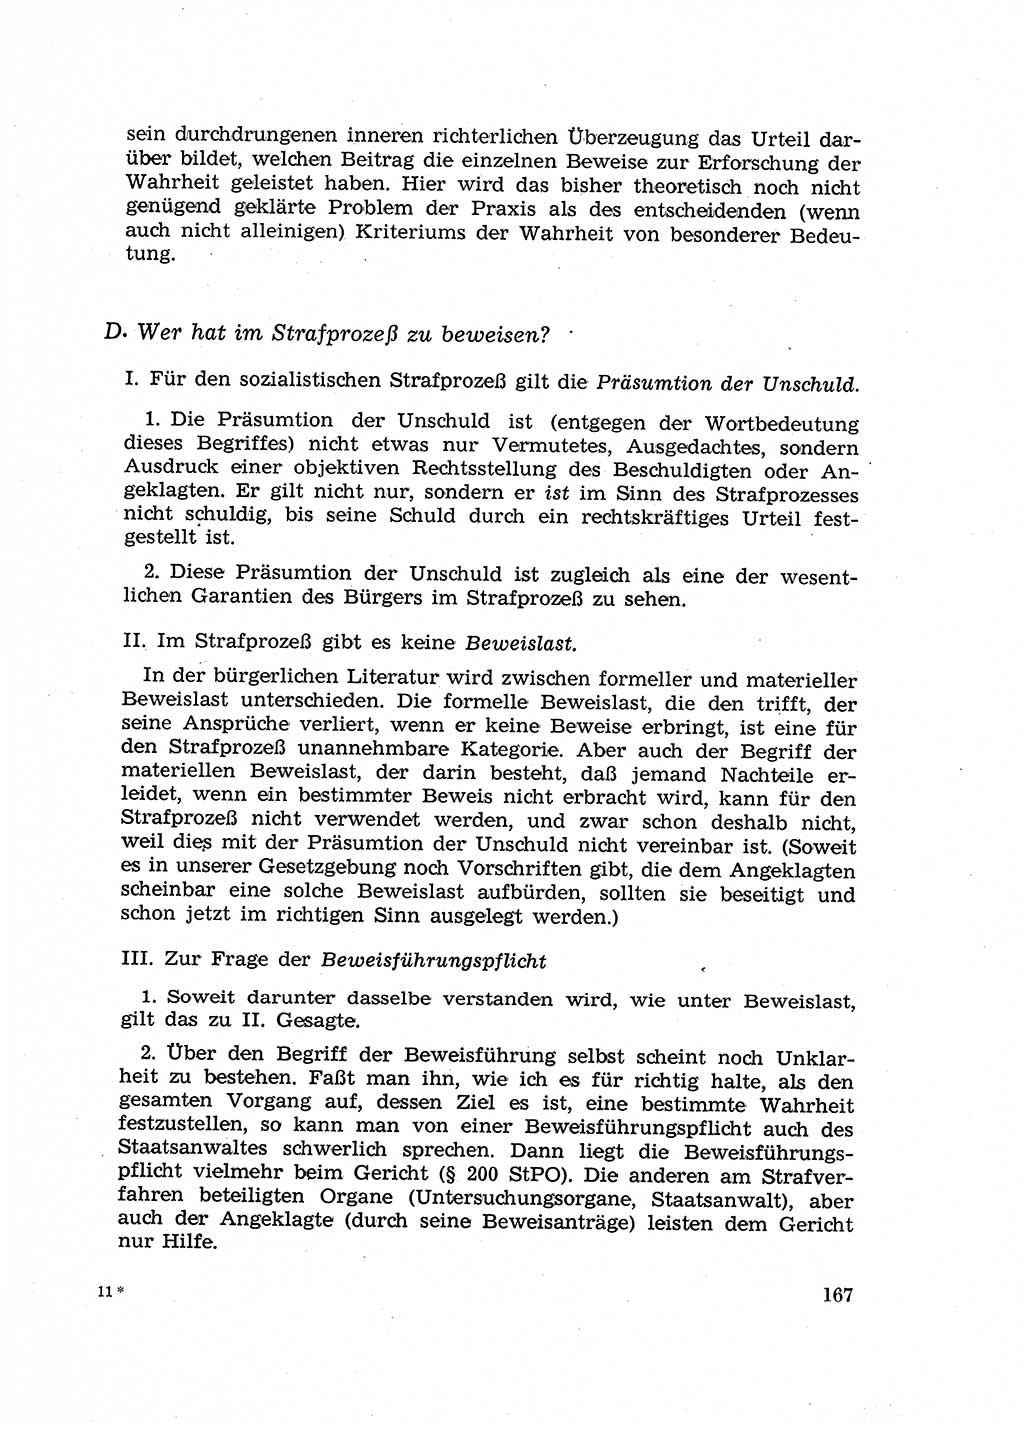 Fragen des Beweisrechts im Strafprozess [Deutsche Demokratische Republik (DDR)] 1956, Seite 167 (Fr. BeweisR. Str.-Proz. DDR 1956, S. 167)